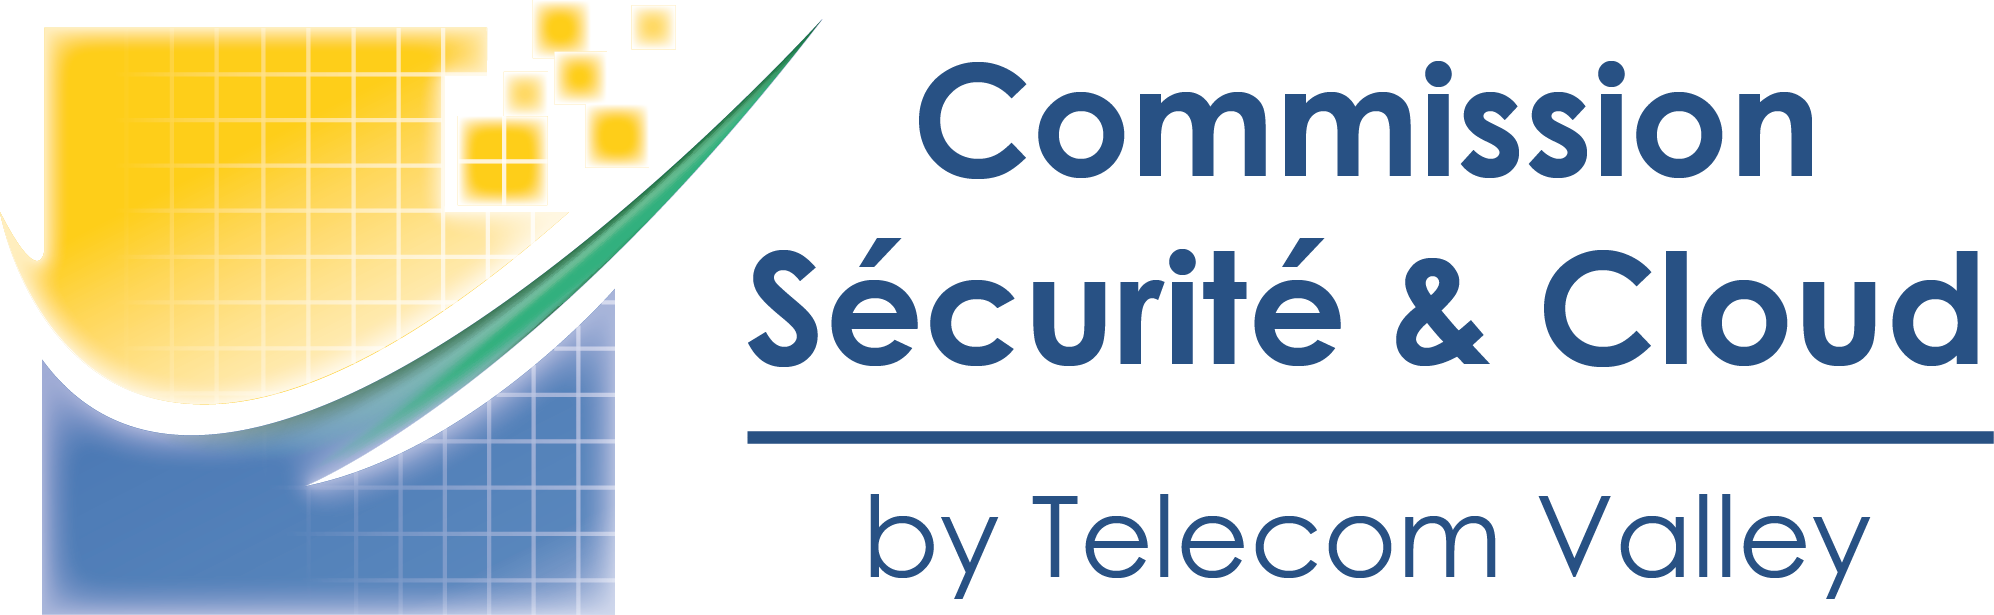 12 juin 2018 – Commission Sécurité & Cloud